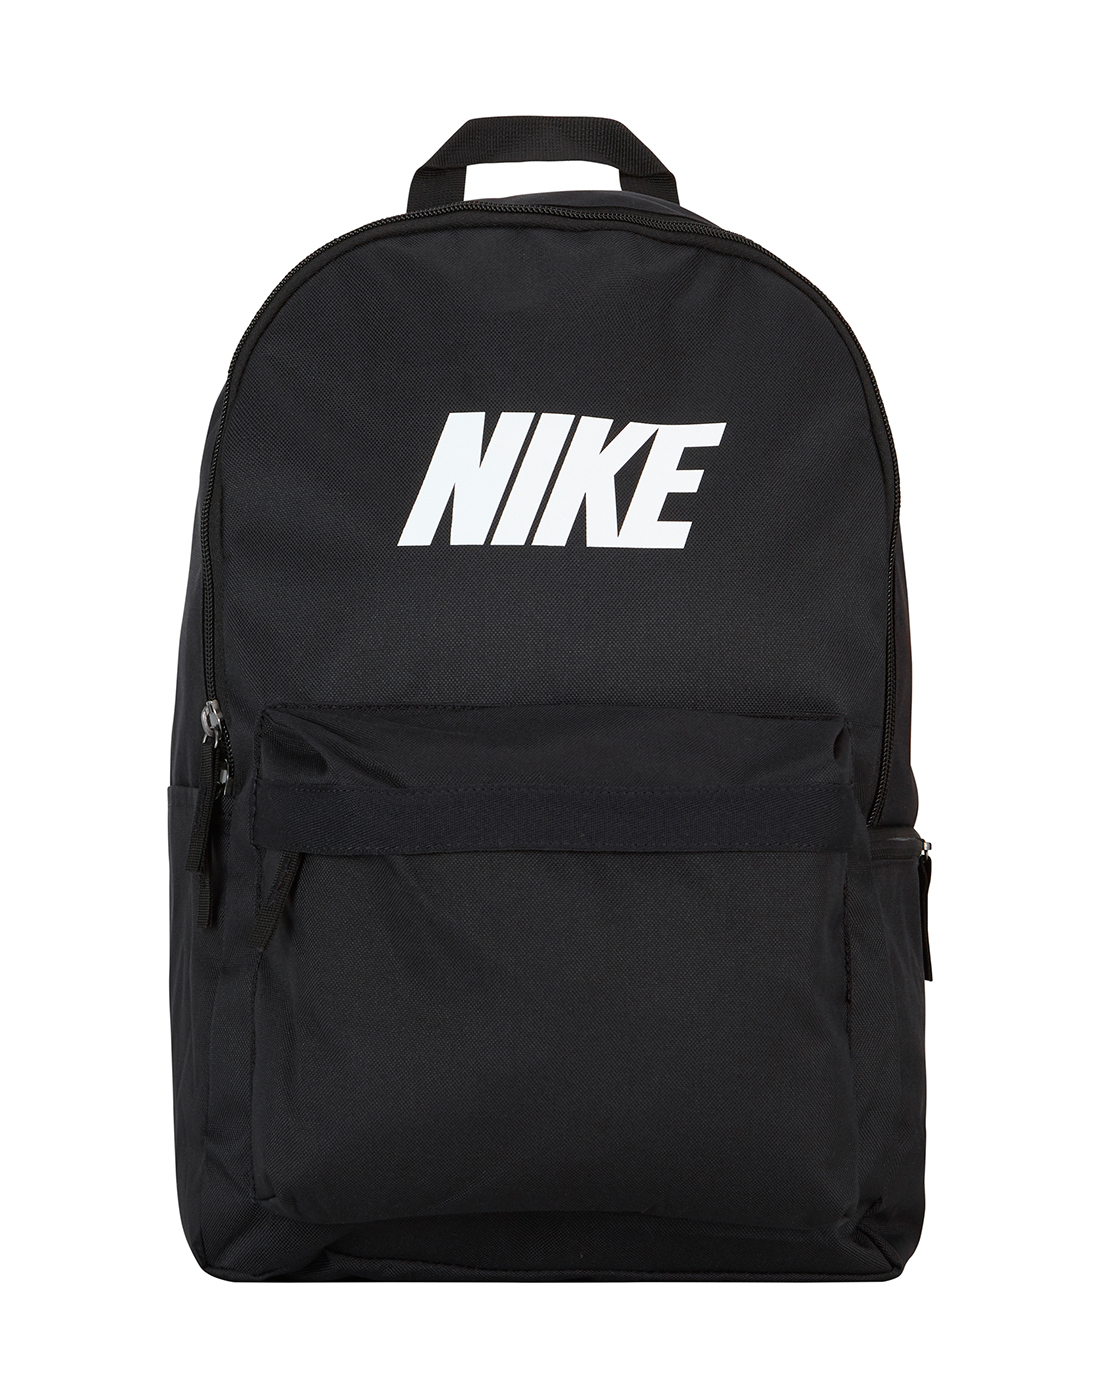 Nike Heritage Backpack - Black | Life Style Sports UK